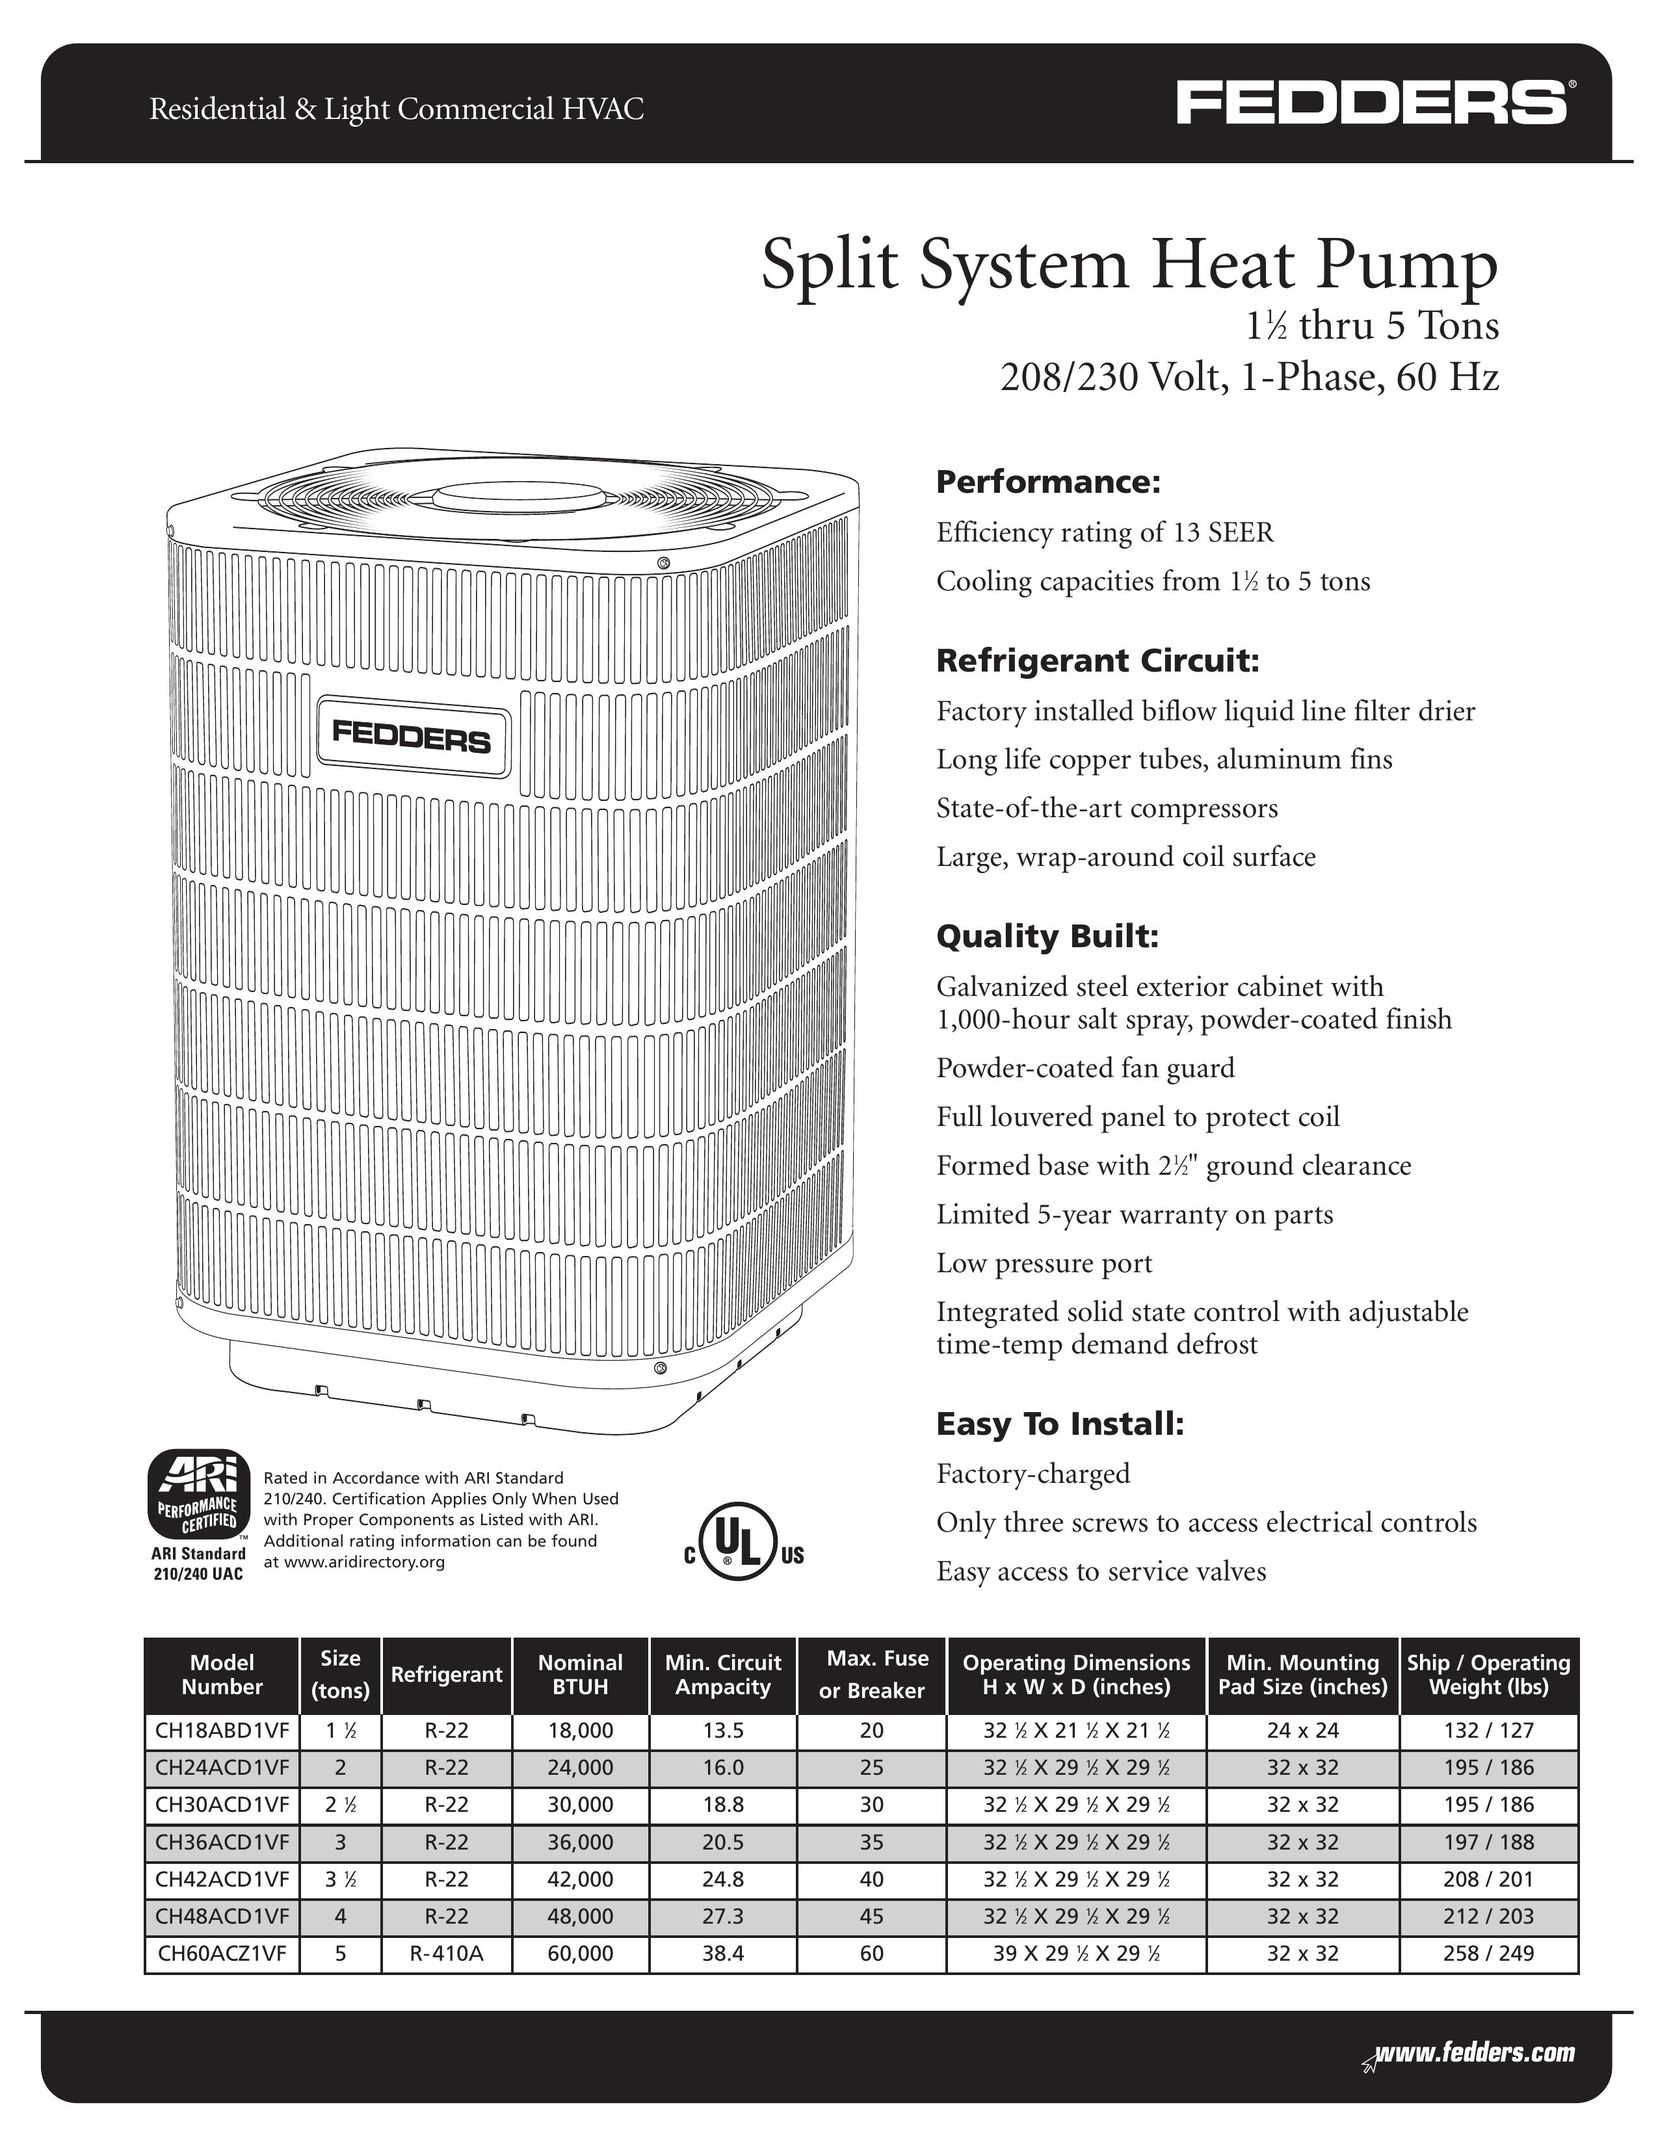 Fedders CH24ACD1VF Heat Pump User Manual